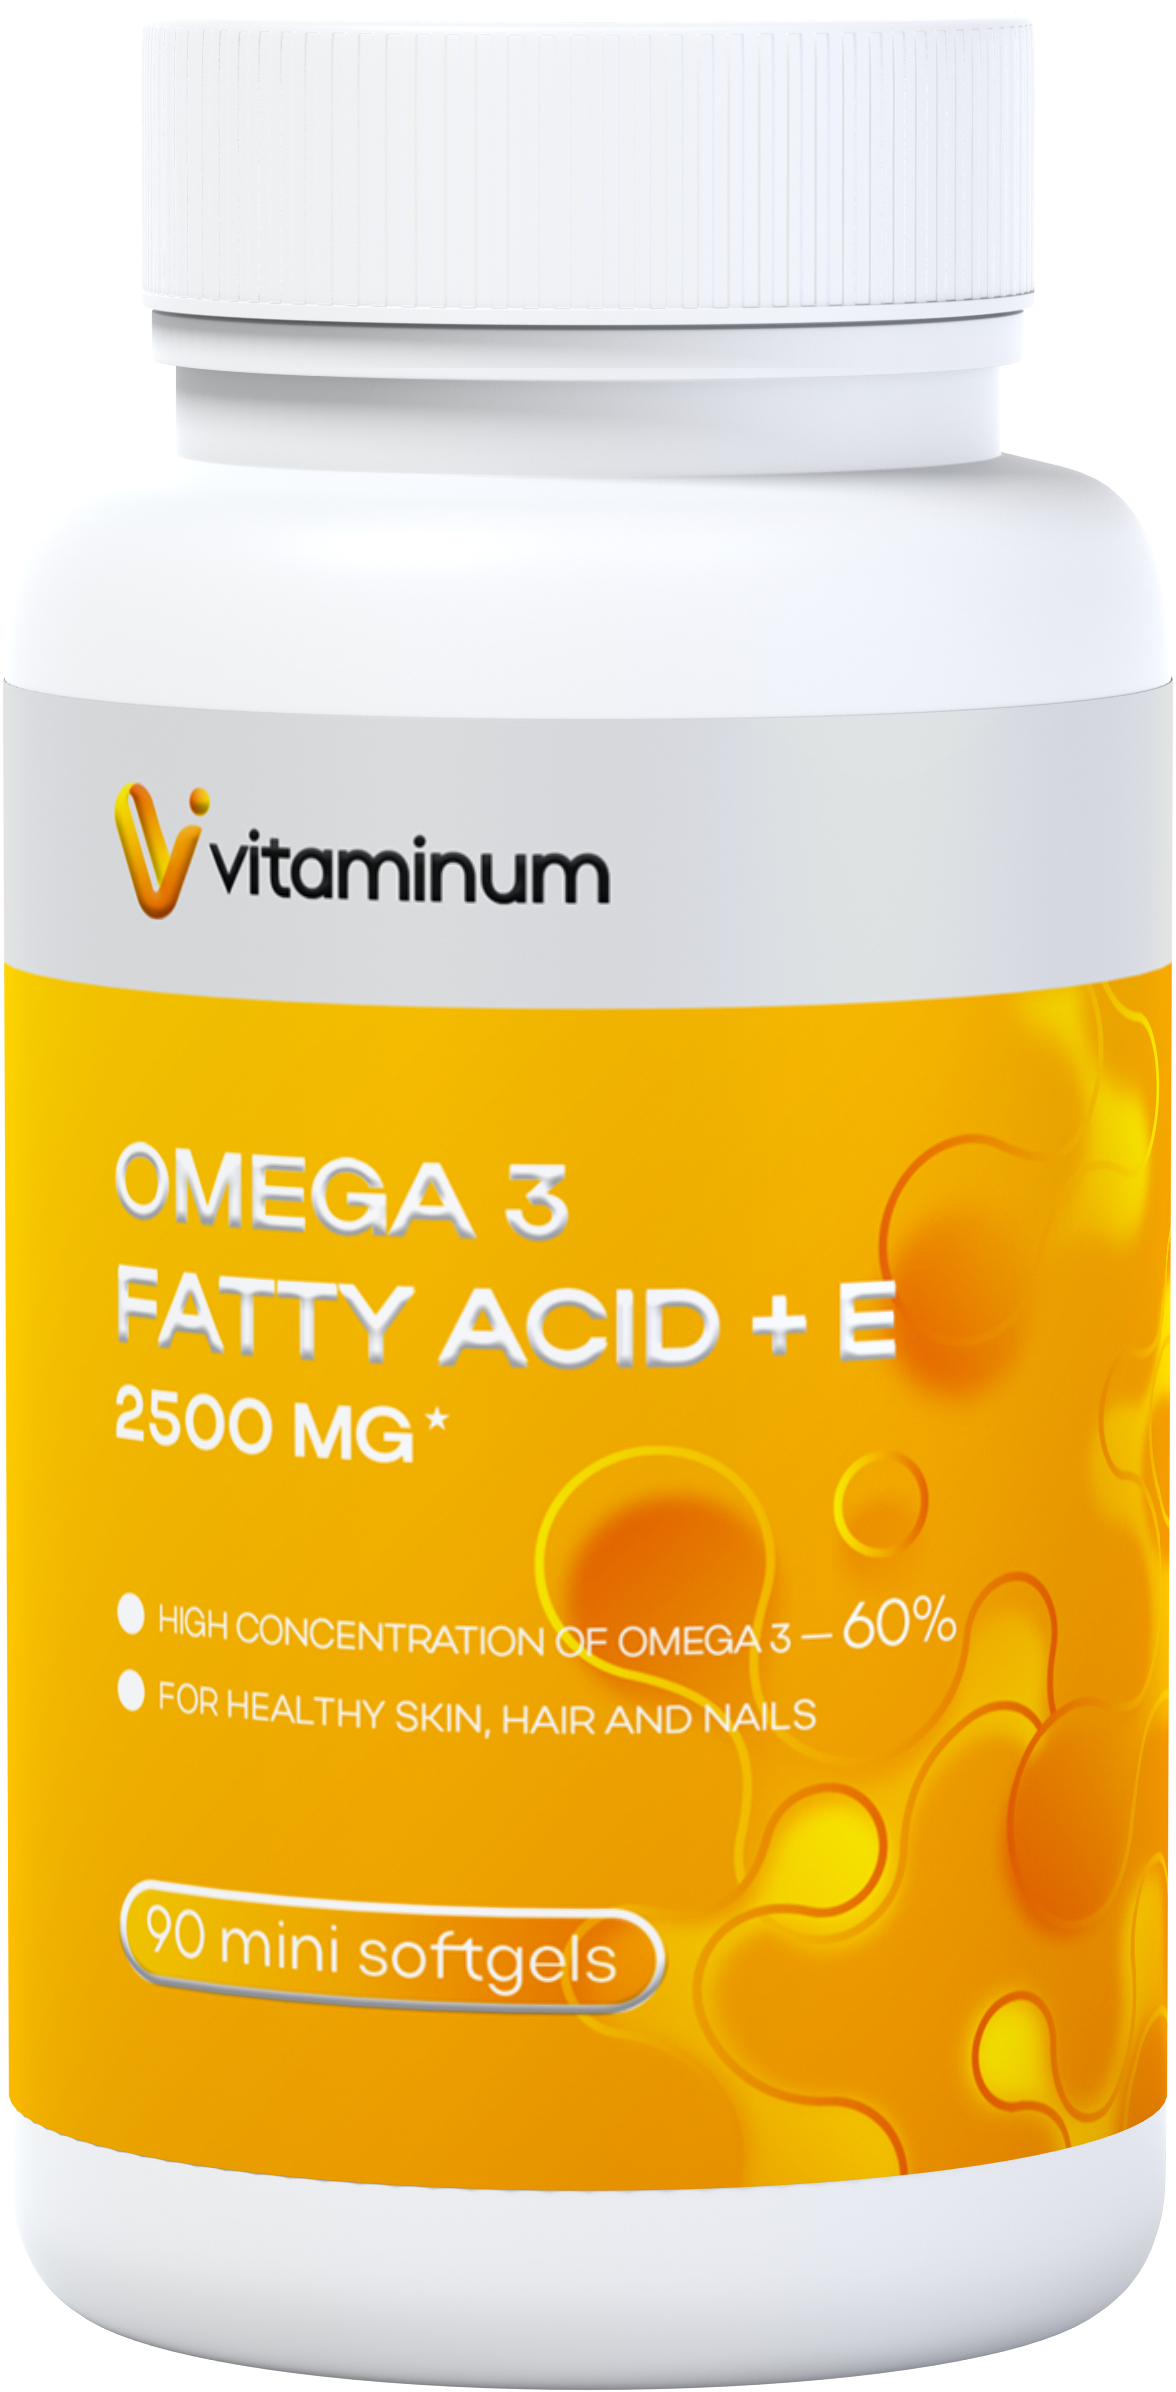  Vitaminum ОМЕГА 3 60% + витамин Е (2500 MG*) 90 капсул 700 мг   в Саках